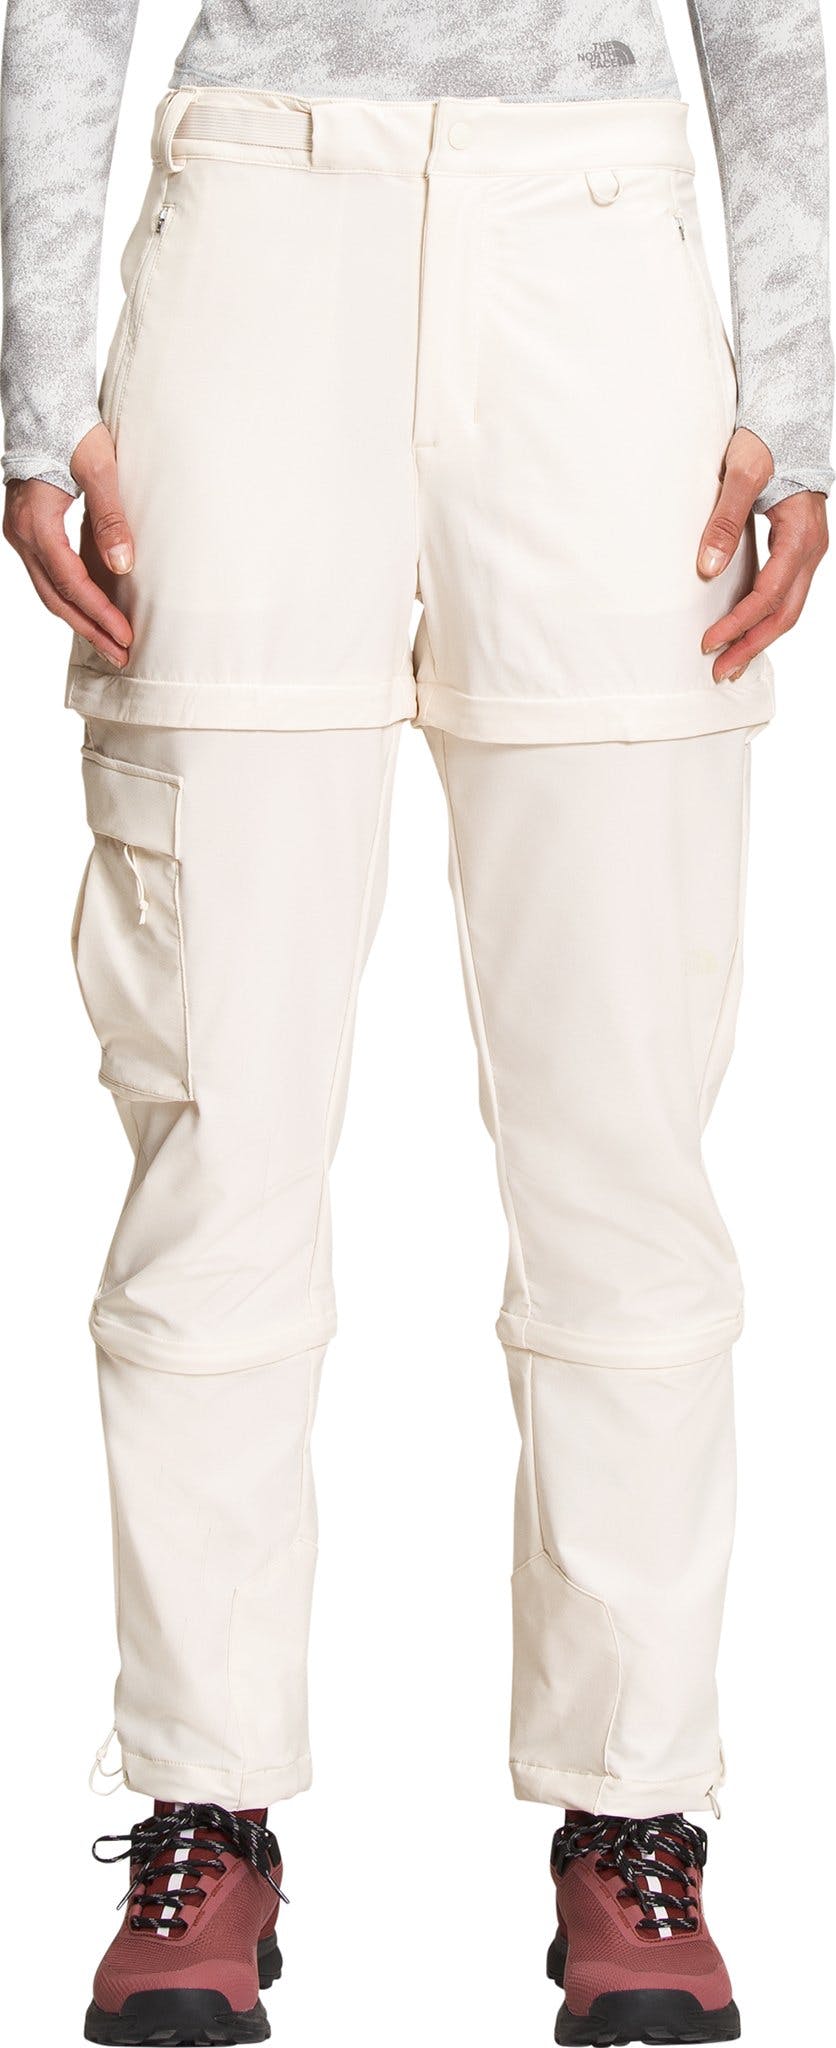 Product image for Bridgeway Zip-Off Pants - Women's